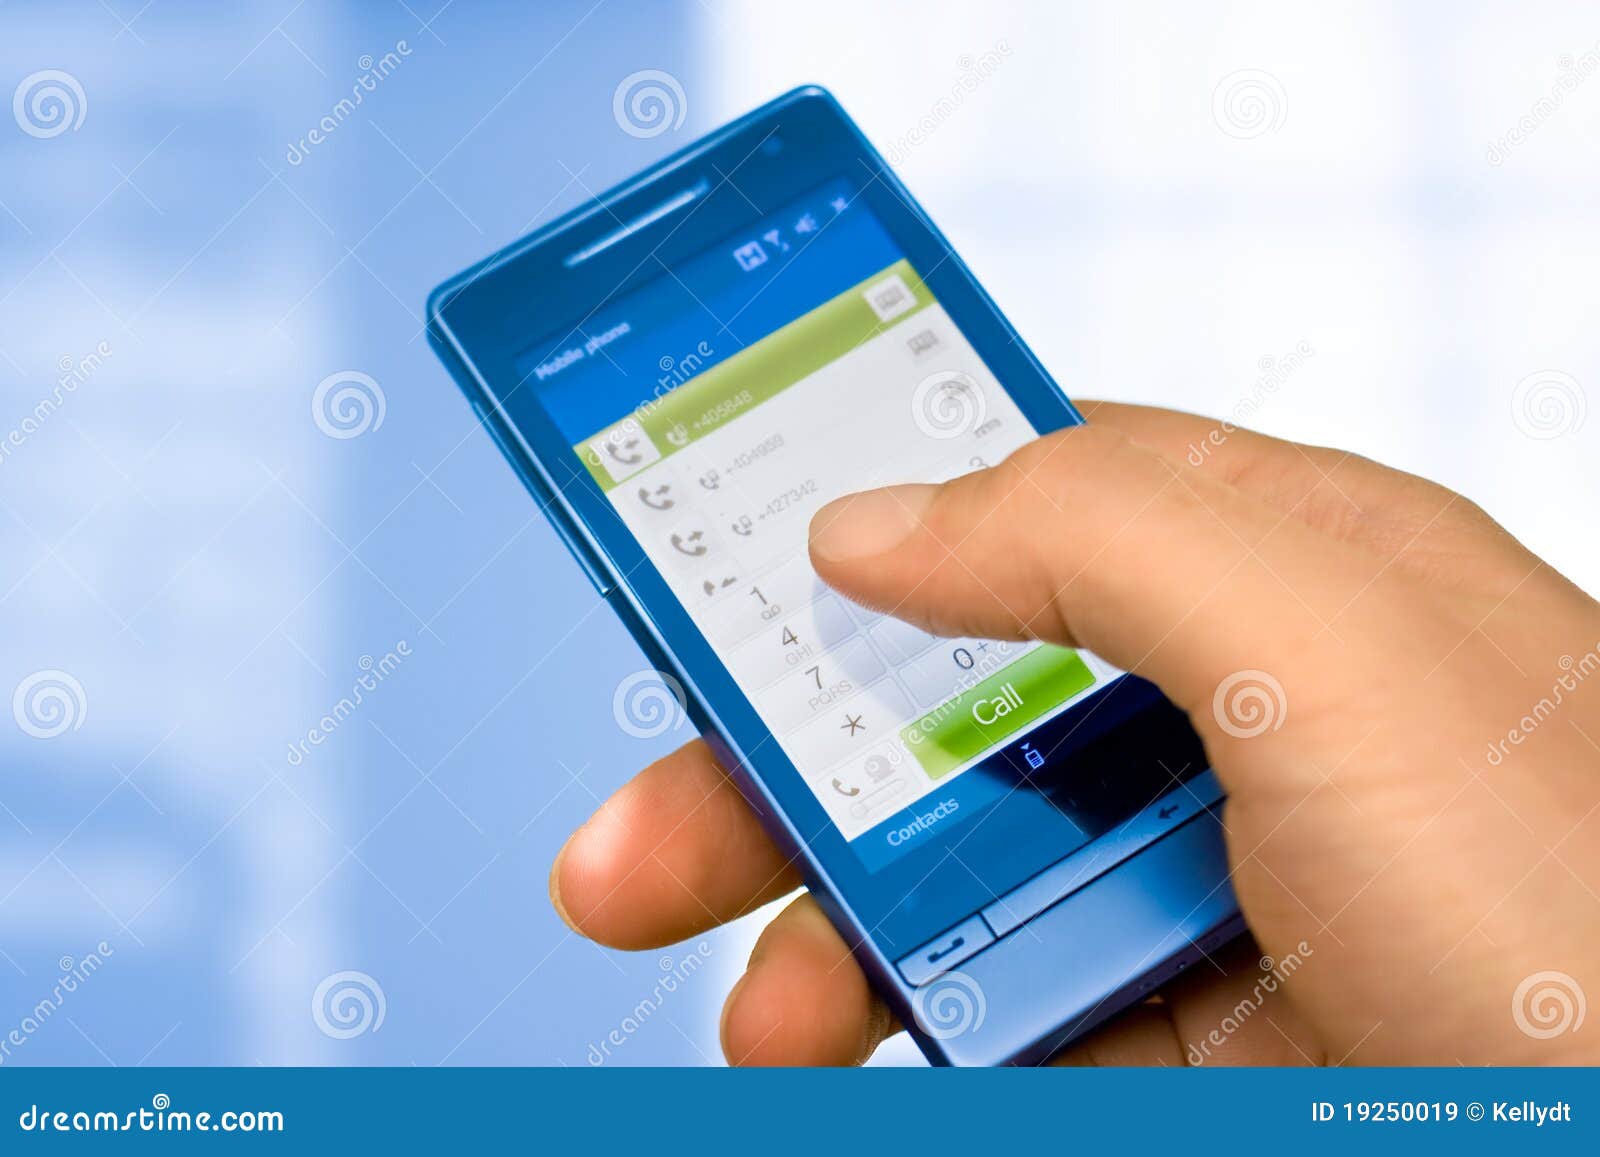 touchscreen mobile